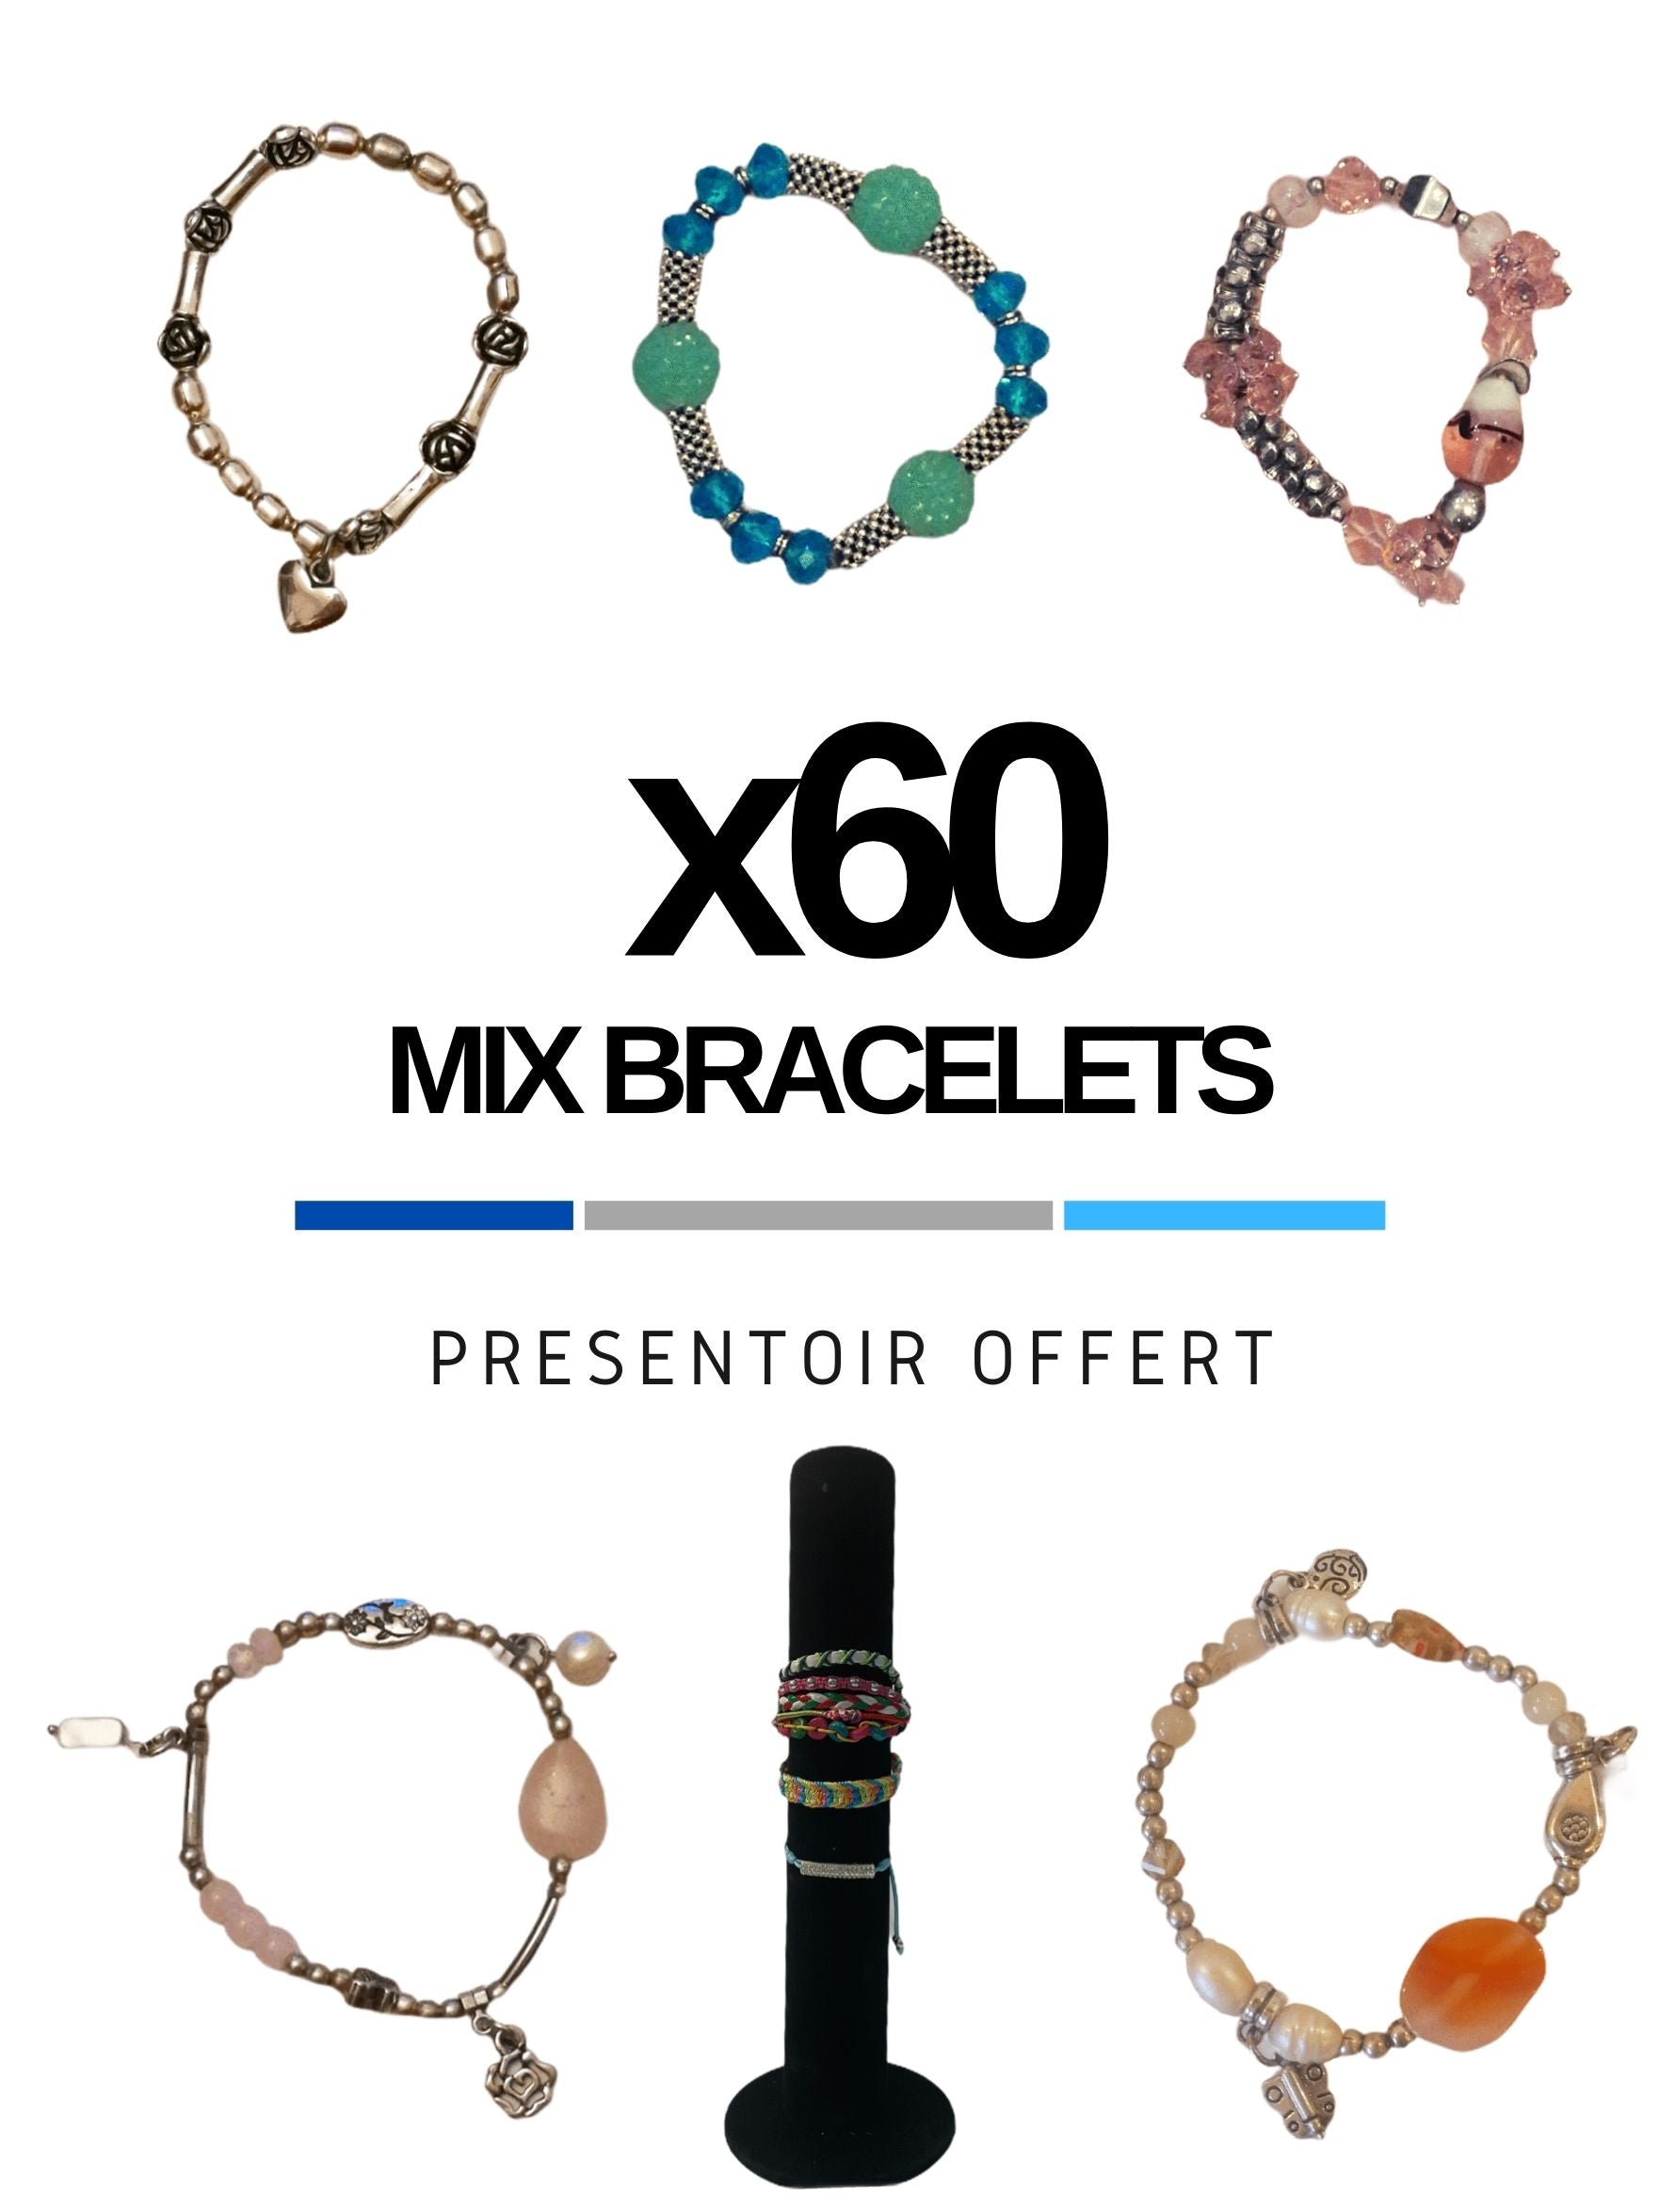 MAXI-LOT Présentoir offert + Mix porte-clé (x48)